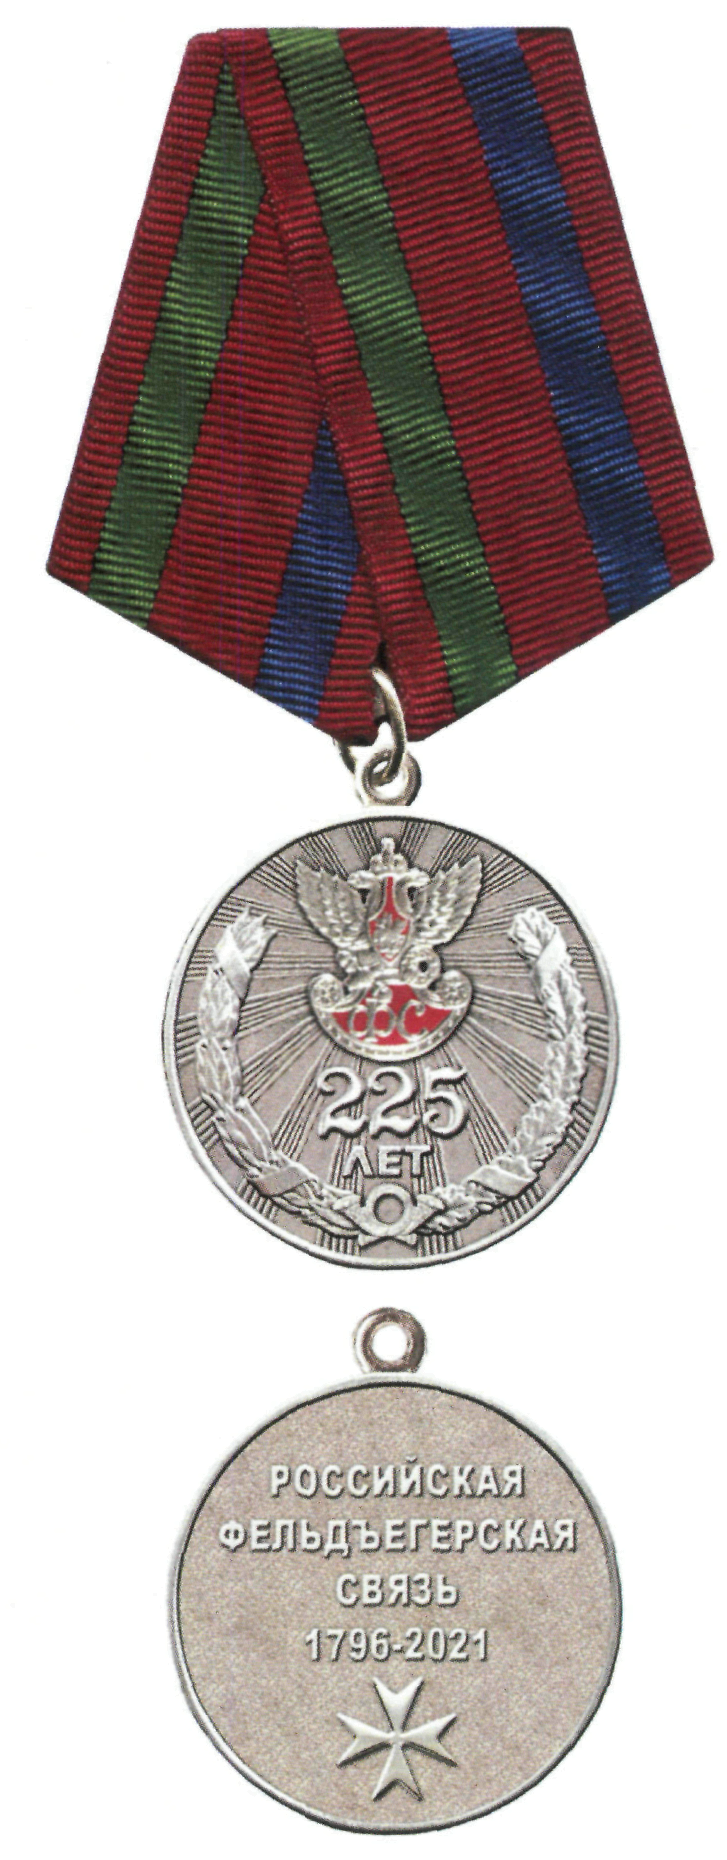 Медаль 225 лет фельдъегерской службе